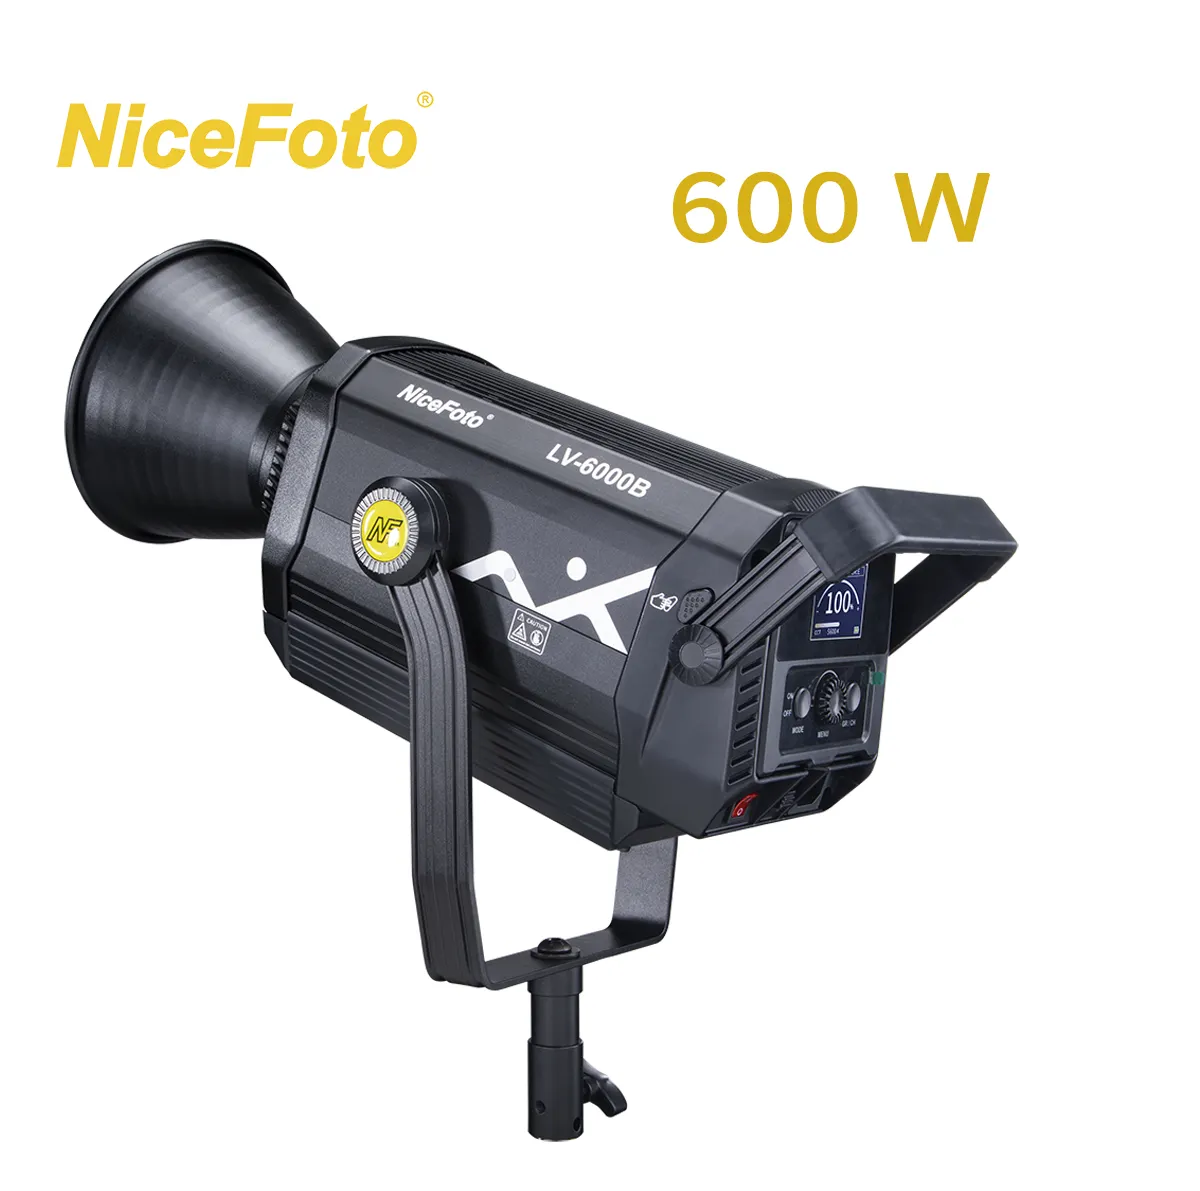 NiceFoto 600W Professional Video Fill LED attrezzatura per l'illuminazione dello Studio fotografico a luce continua per le riprese